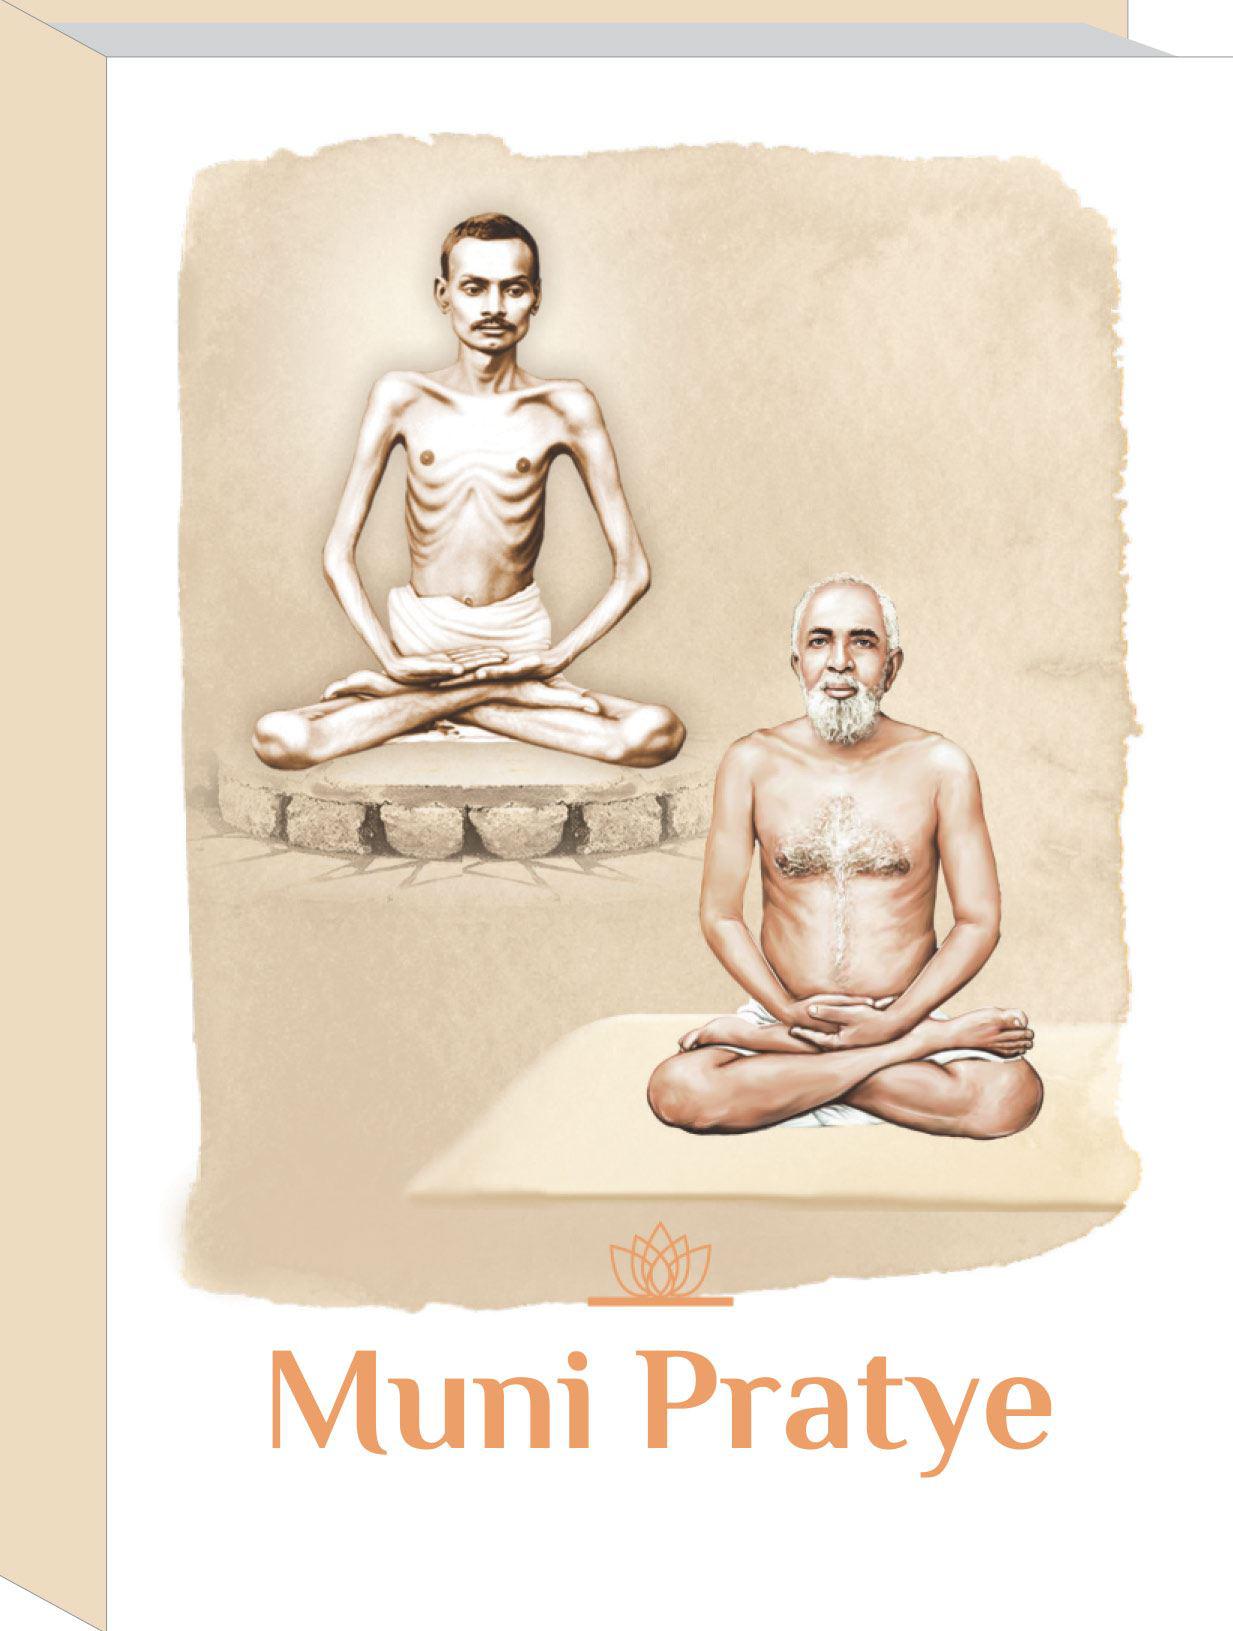 Muni Pratye